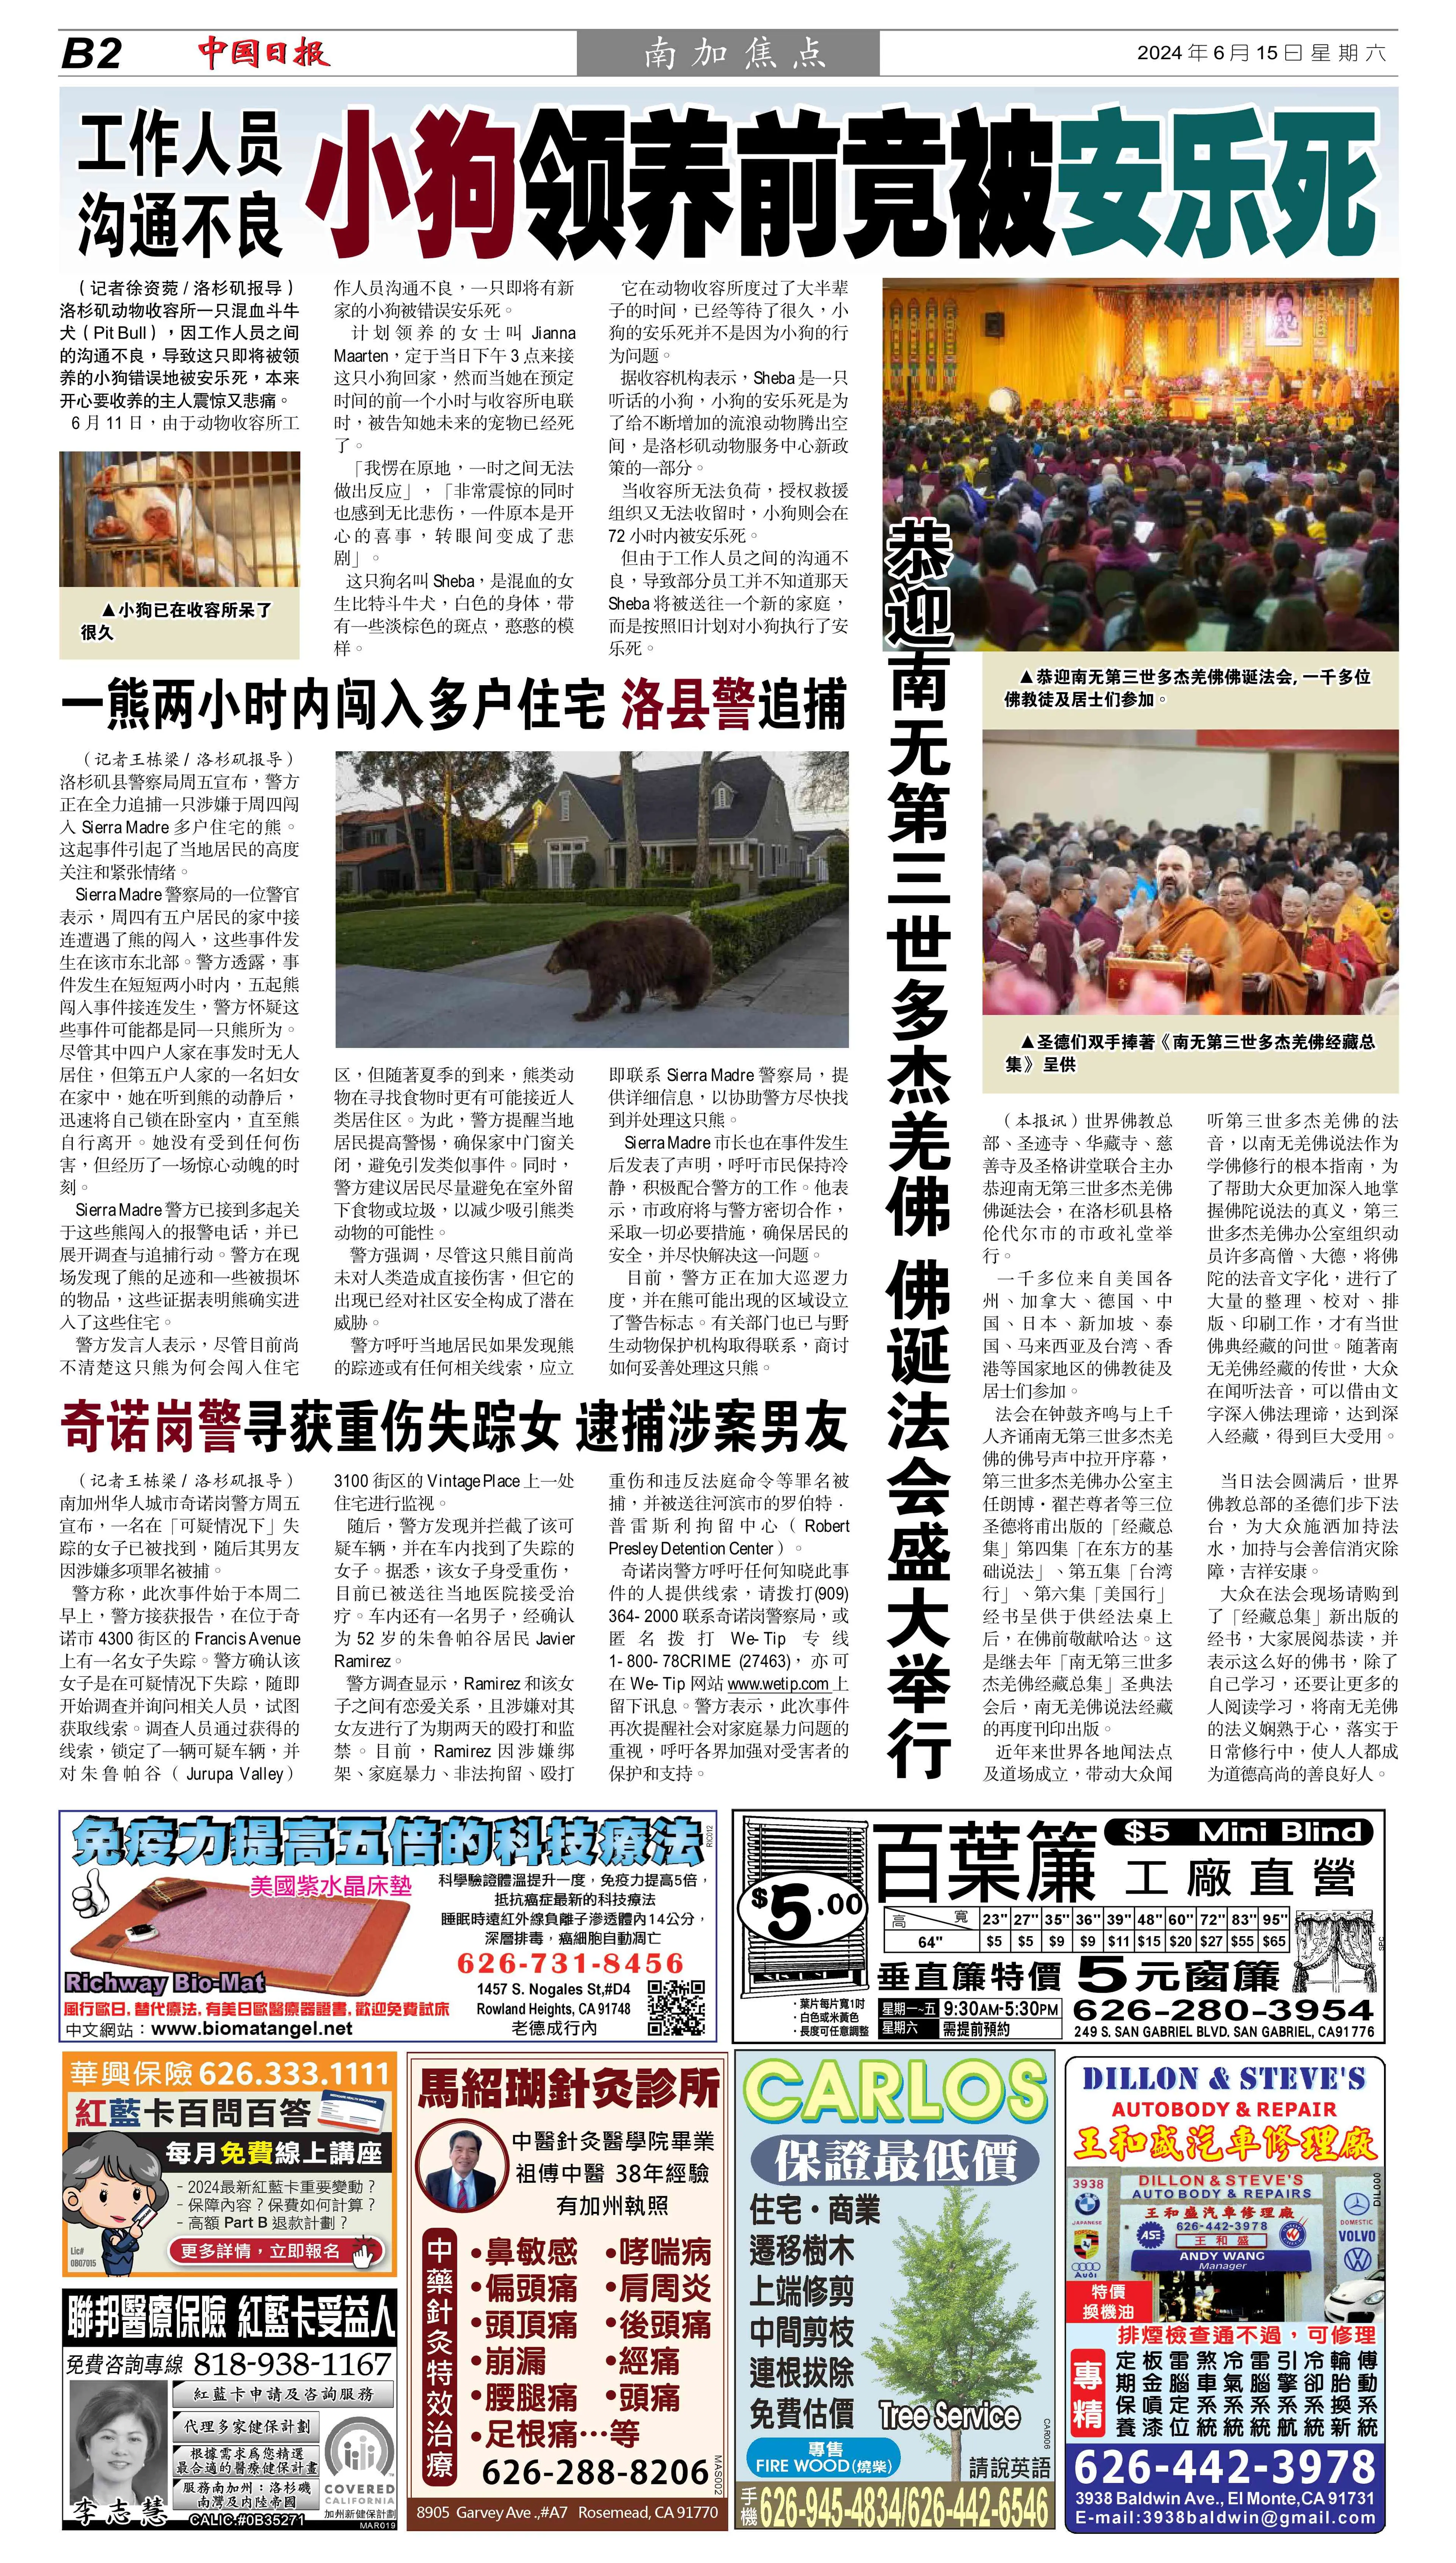 《中國日報》p14：2024 年 6 月 15 日：恭迎南無第三世多杰羌佛佛誕法會盛大舉行